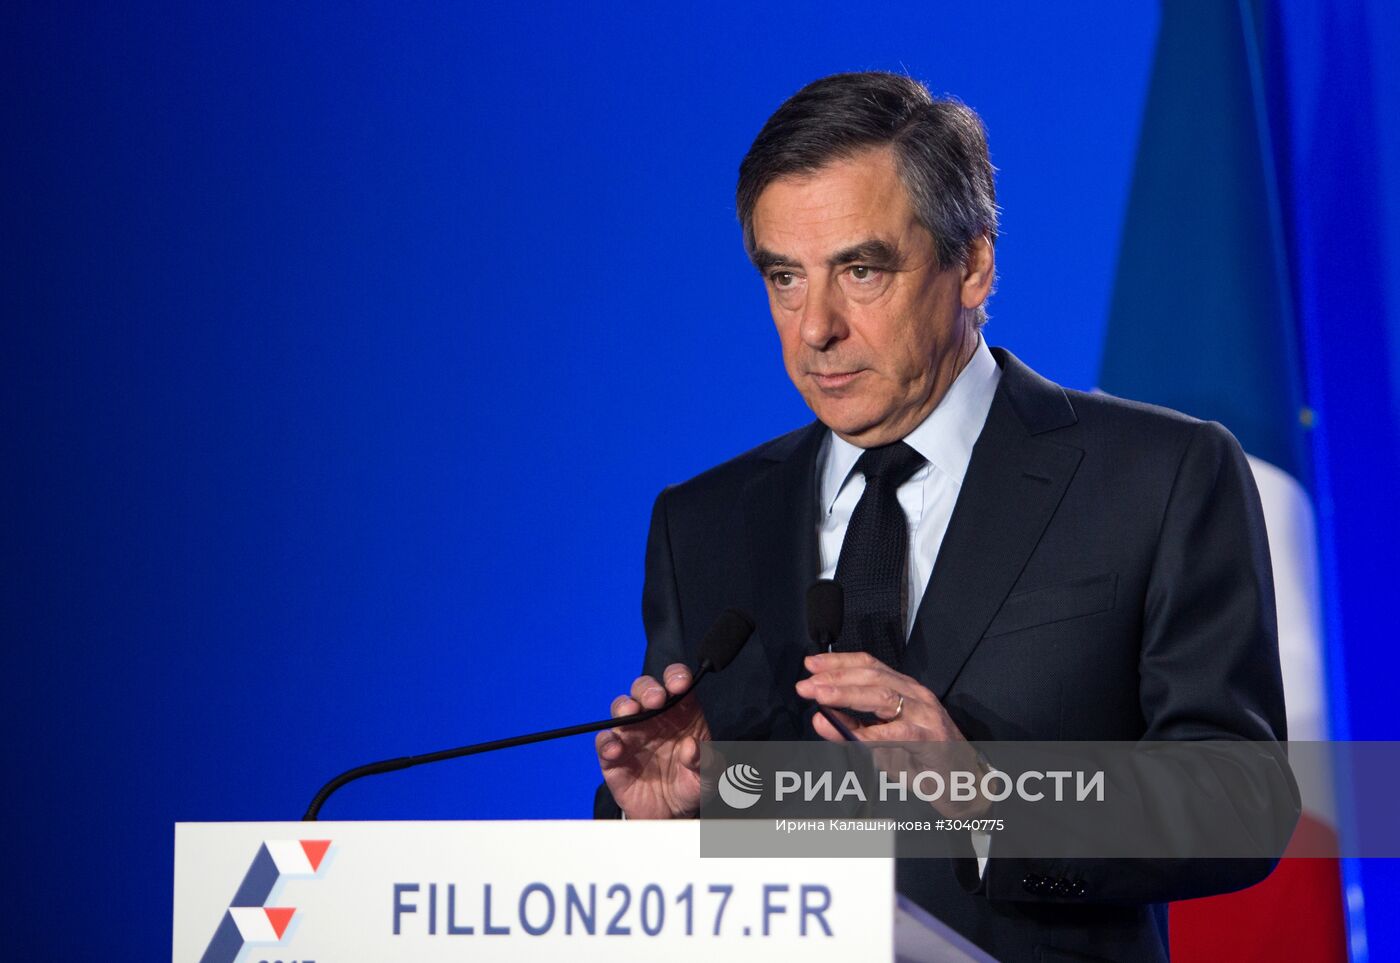 Пресс-конференция Ф. Фийона в Париже